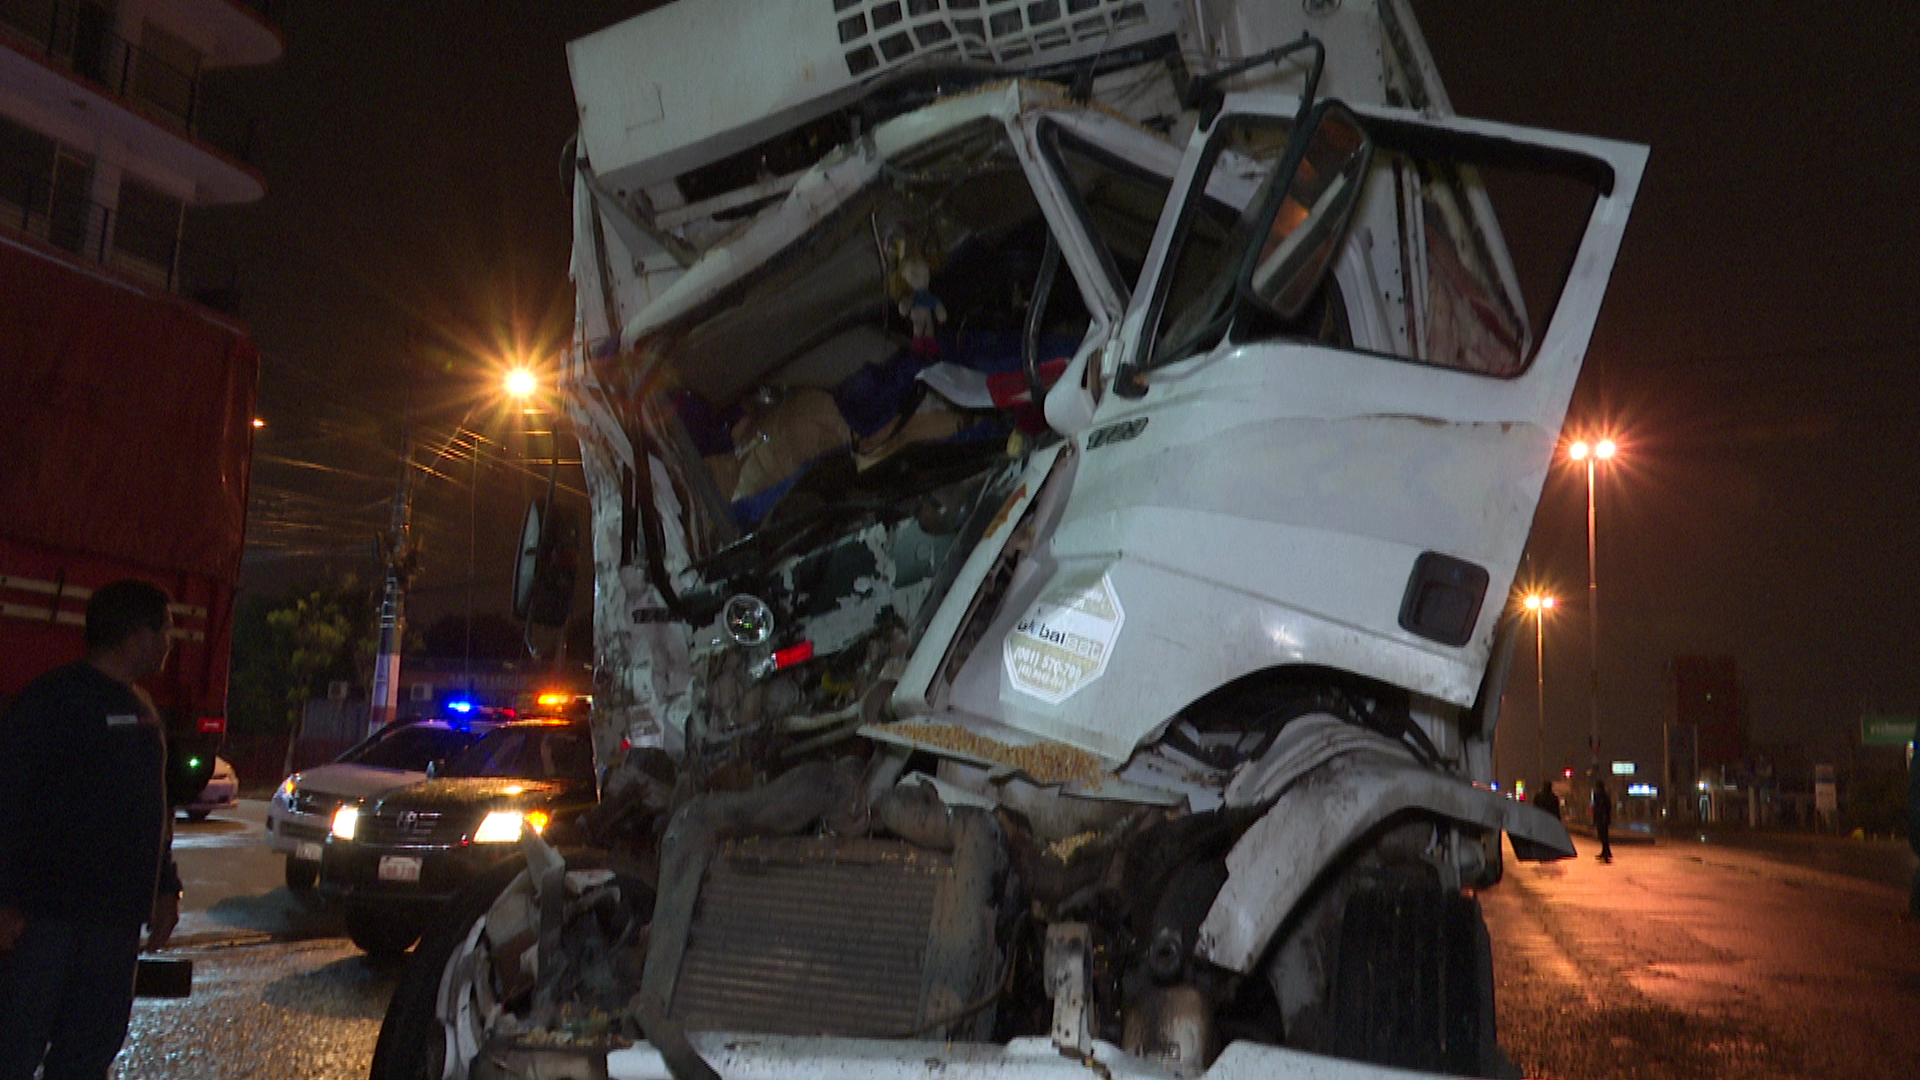 El camión refrigerado impactó violentamente contra un camón averiado. Por fortuna, el conductor resultó solo con lesiones leves.